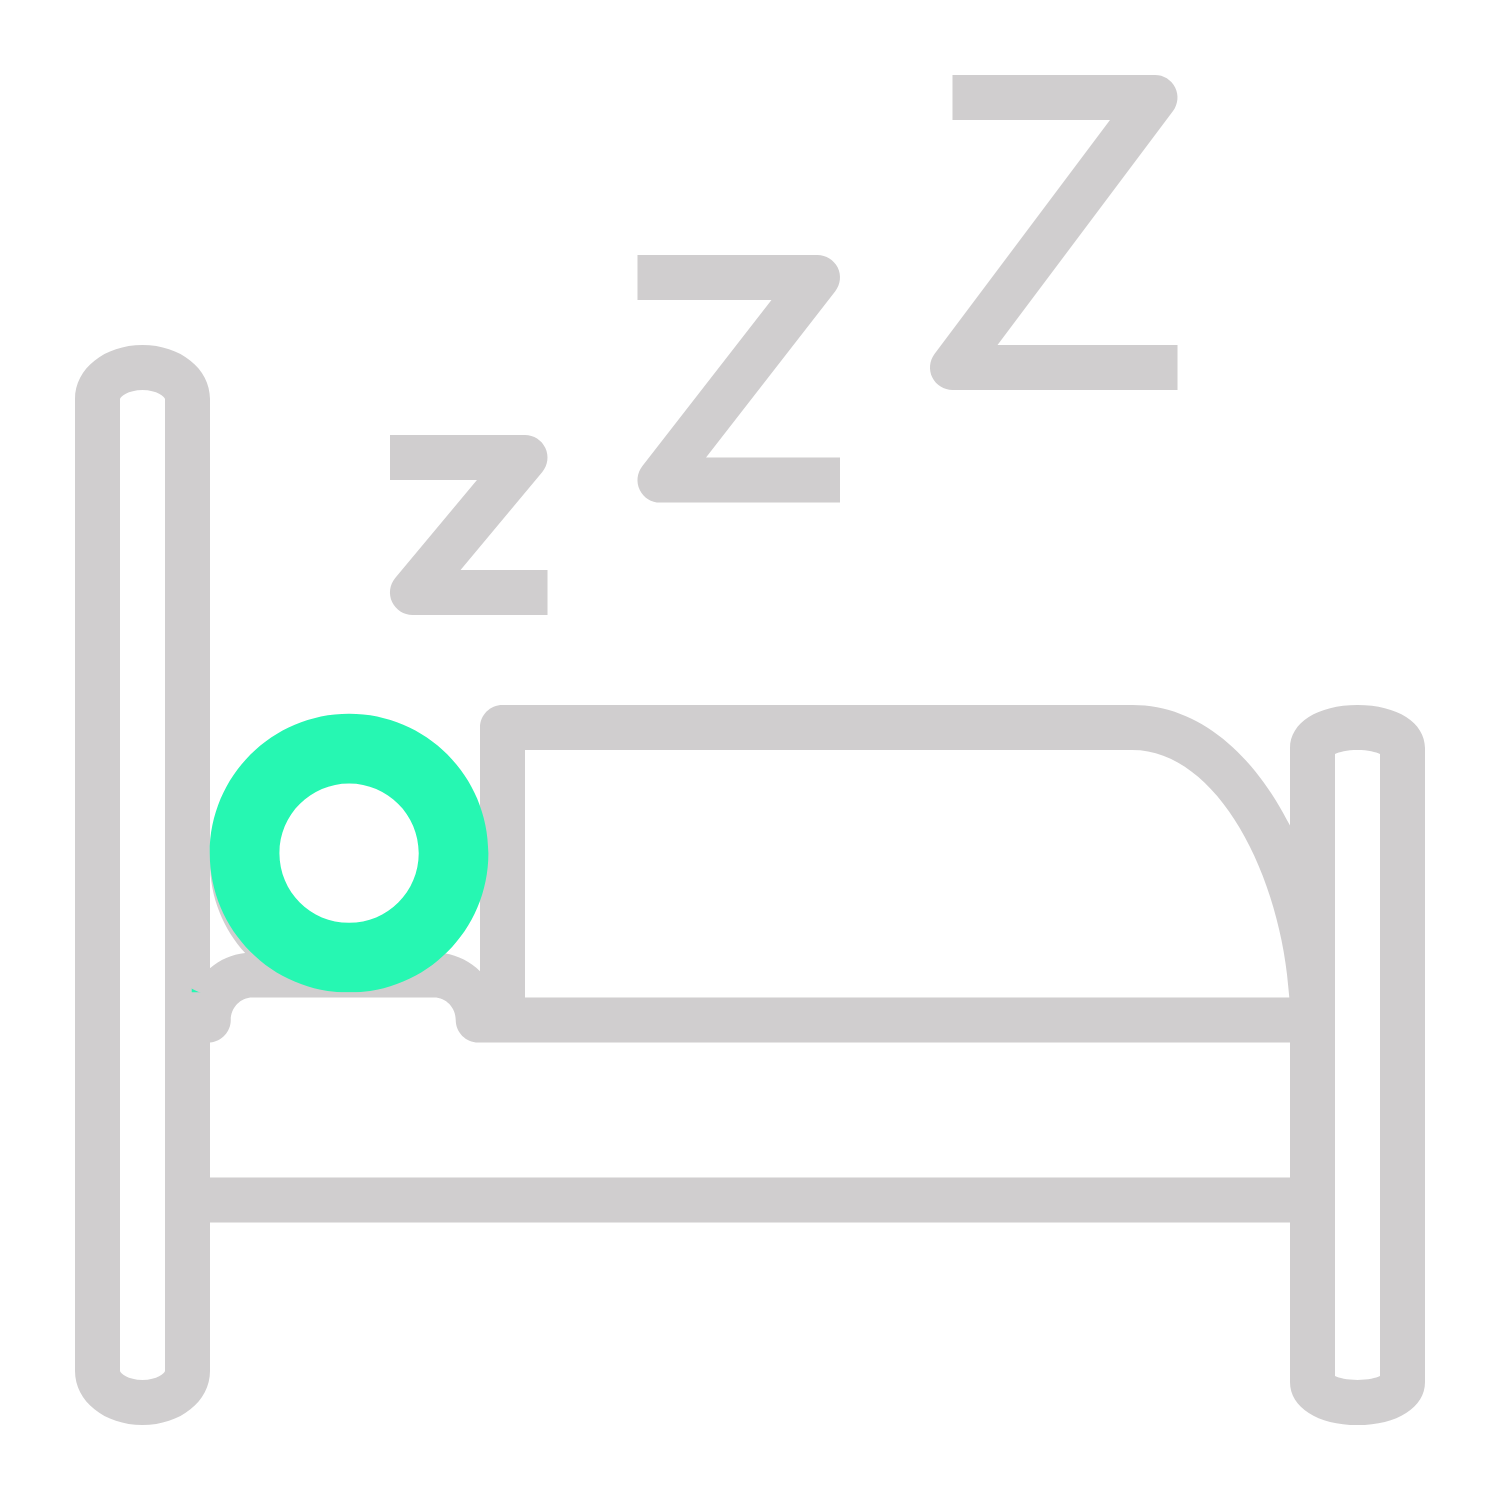 クリニックジョーが展開する睡眠の健康、睡眠障害・不眠症についてのオンライン診療のアイコン